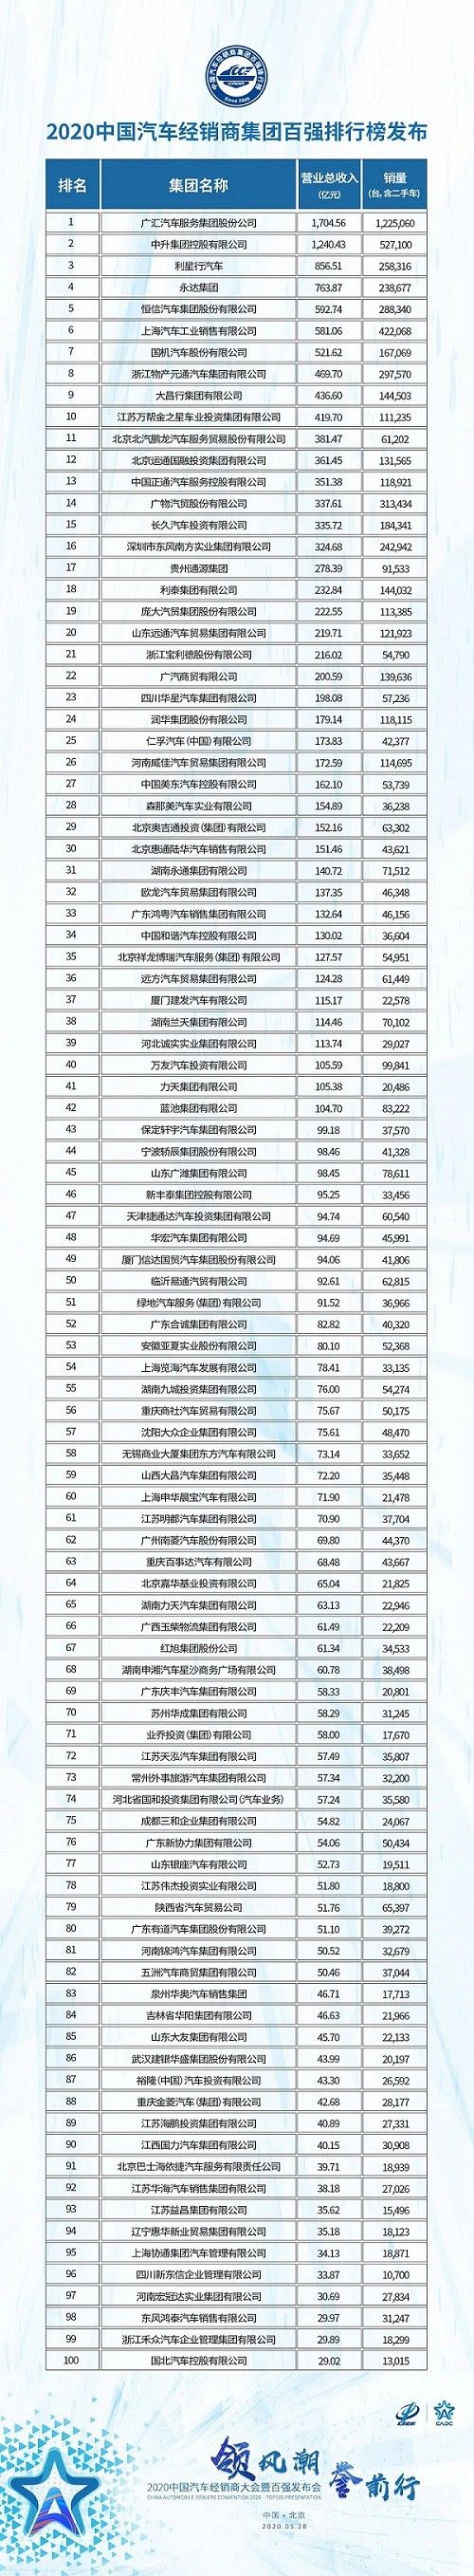 2020中国汽车经销商集团百强排行榜发布